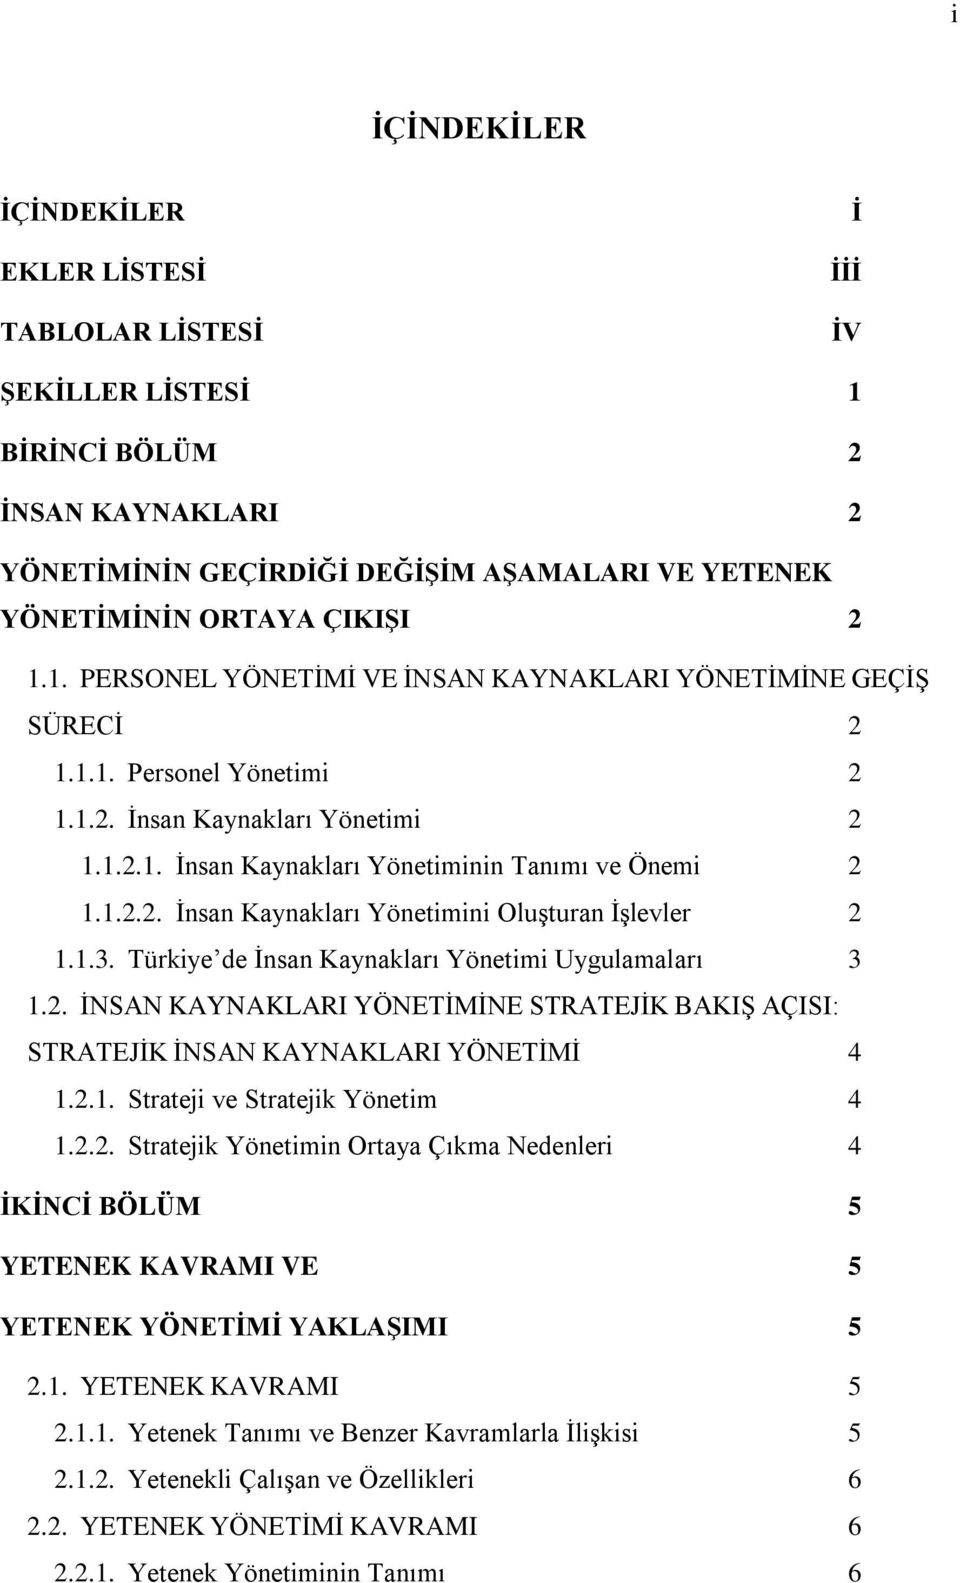 1.3. Türkiye de İnsan Kaynakları Yönetimi Uygulamaları 3 1.2. İNSAN KAYNAKLARI YÖNETİMİNE STRATEJİK BAKIŞ AÇISI: STRATEJİK İNSAN KAYNAKLARI YÖNETİMİ 4 1.2.1. Strateji ve Stratejik Yönetim 4 1.2.2. Stratejik Yönetimin Ortaya Çıkma Nedenleri 4 İKİNCİ BÖLÜM 5 YETENEK KAVRAMI VE 5 YETENEK YÖNETİMİ YAKLAŞIMI 5 2.